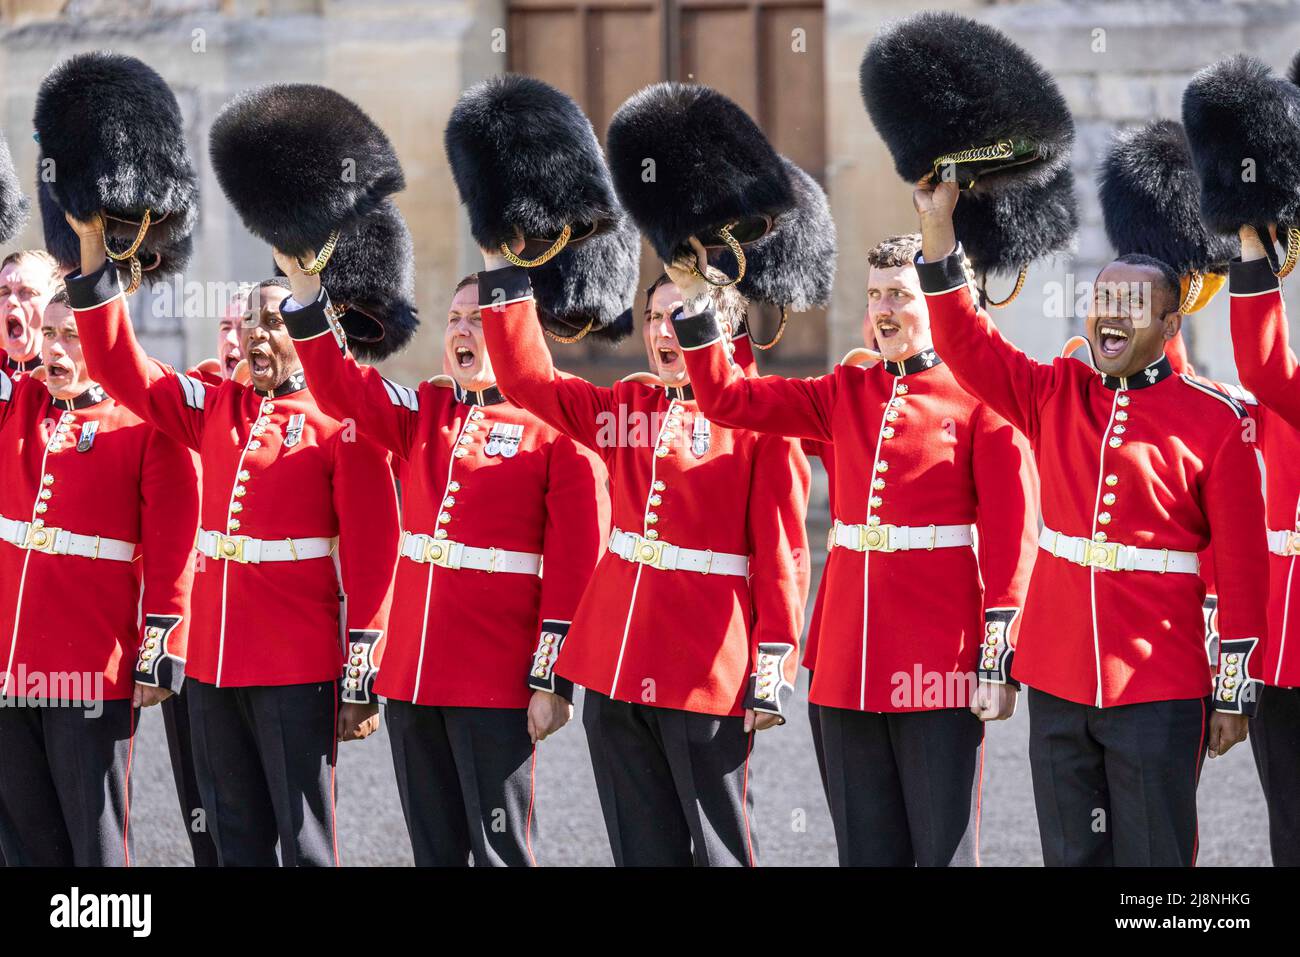 Les gardiens du bataillon de 1st les gardes irlandais font trois acclamations pendant la parade dans le Quadrangle du château de Windsor où leurs nouvelles couleurs régimentaires leur ont été présentées par le duc de Cambridge. Date de la photo: Mardi 17 mai 2022. Banque D'Images